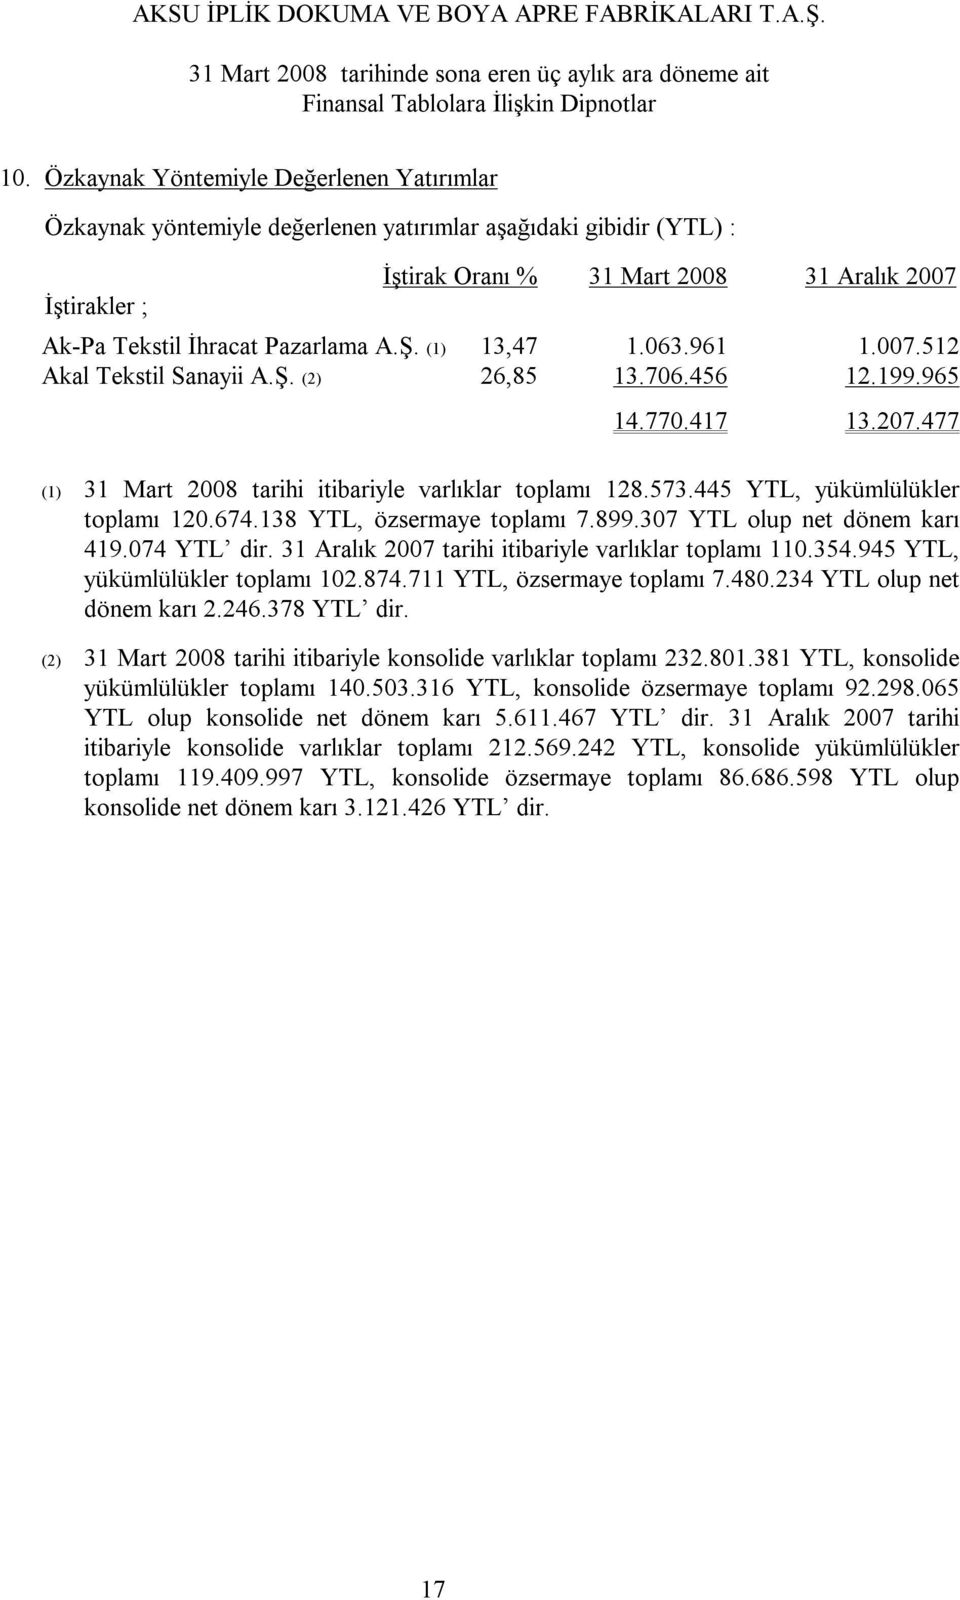 138 YTL, özsermaye toplamı 7.899.307 YTL olup net dönem karı 419.074 YTL dir. 31 Aralık 2007 tarihi itibariyle varlıklar toplamı 110.354.945 YTL, yükümlülükler toplamı 102.874.